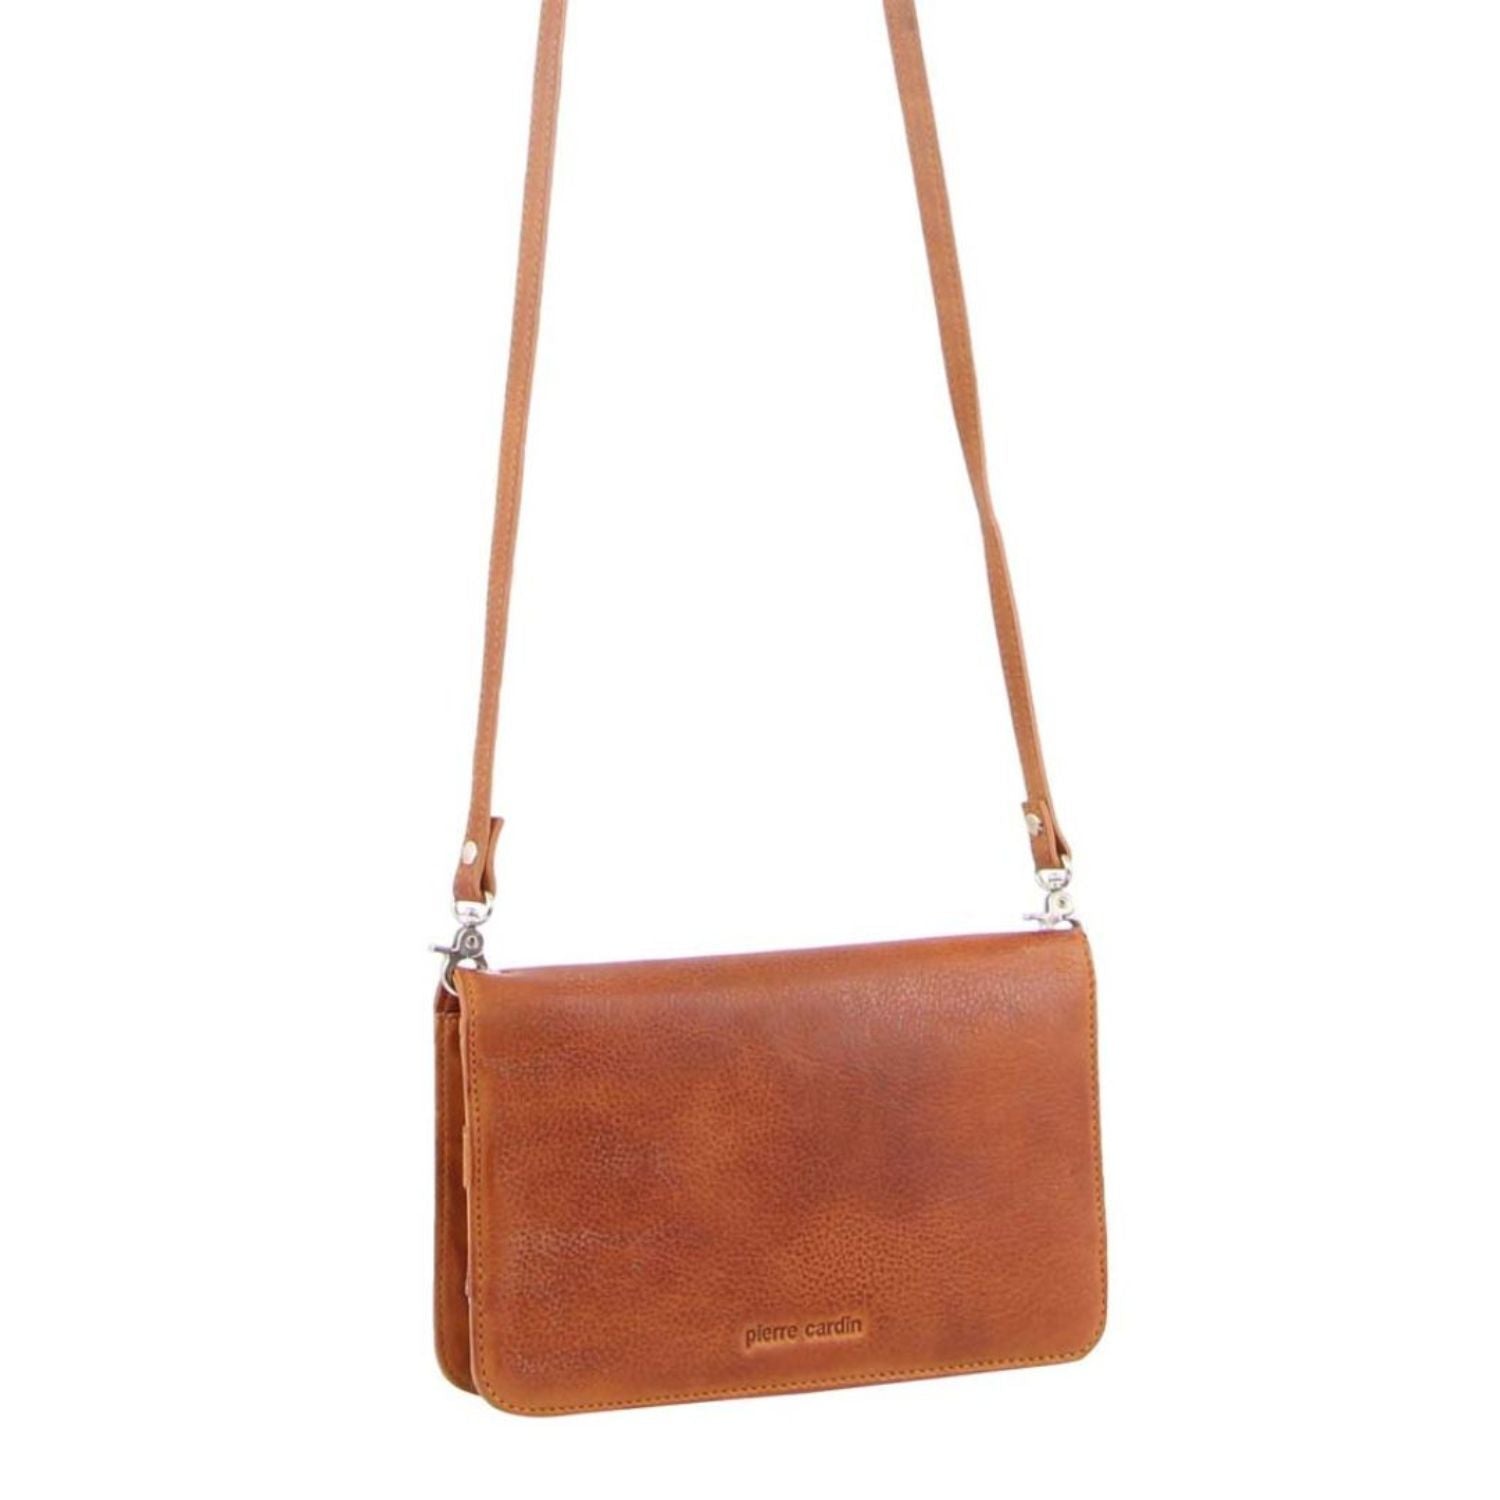 Pierre Cardin Genuine Leather Clutch/Wallet Bag in Cognac